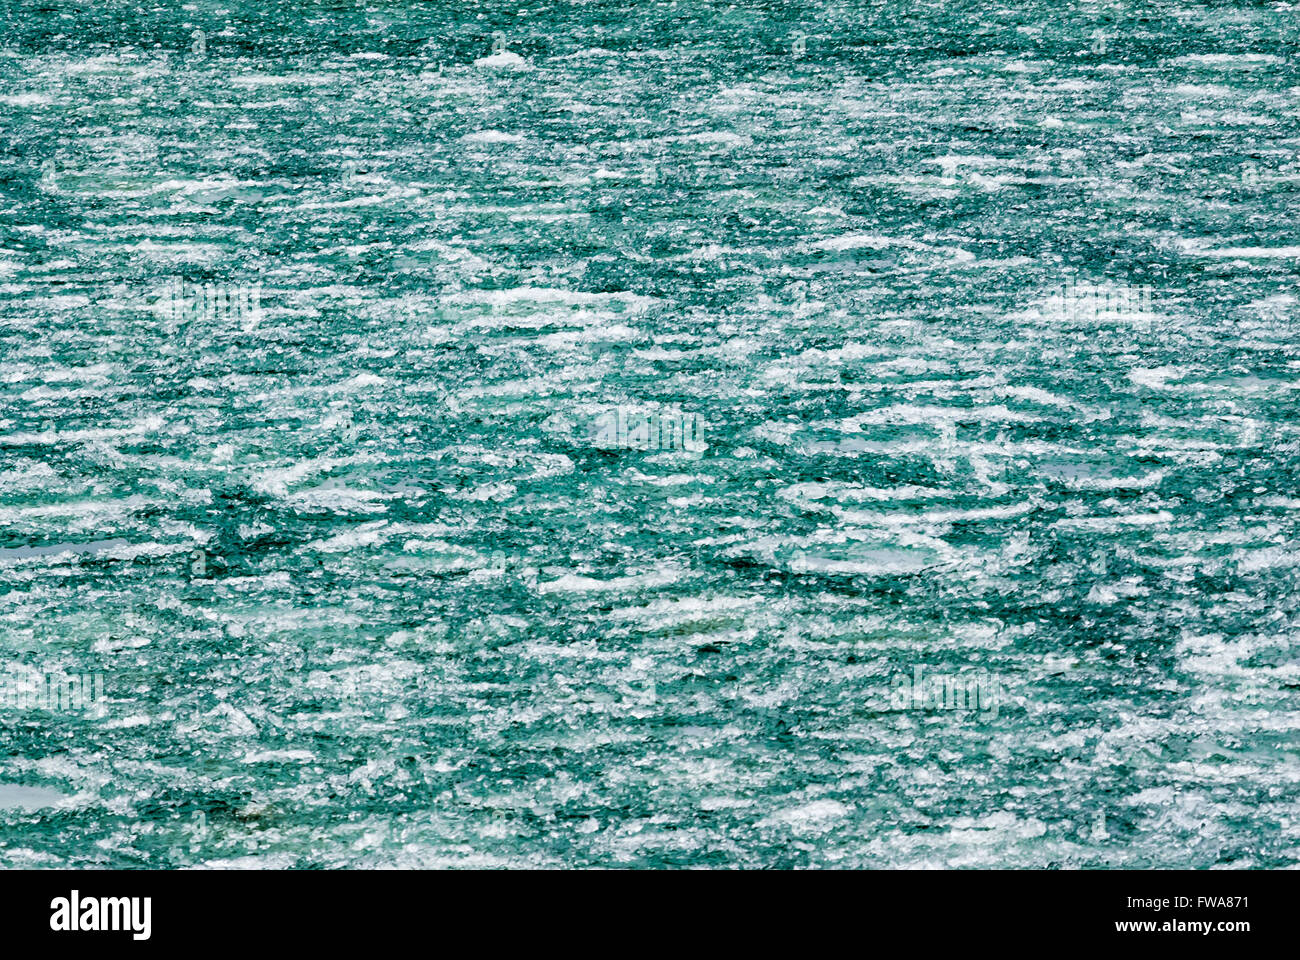 Zusammenfassung Hintergrund von weißen und grünen Eisformationen auf dem Fluss. Stockfoto